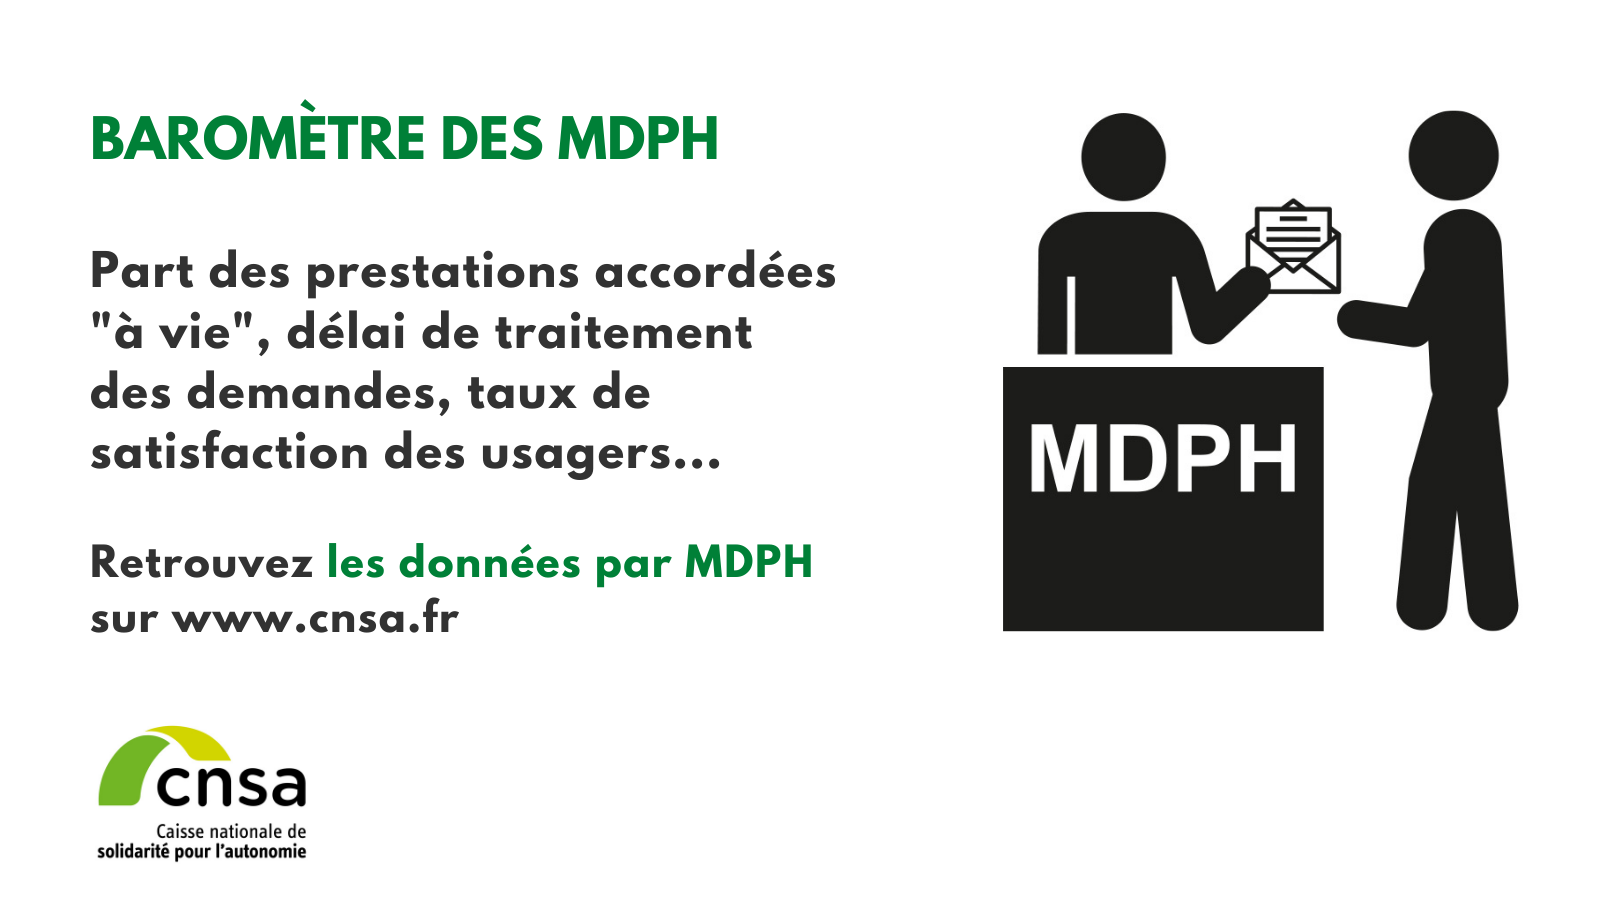 Baromètre des MDPH : part des prestations sociales accordées à vie, délai de traitement des demandes, taux de satisfaction des usagers. Retrouvez les données par MDPH sur www.cnsa.fr